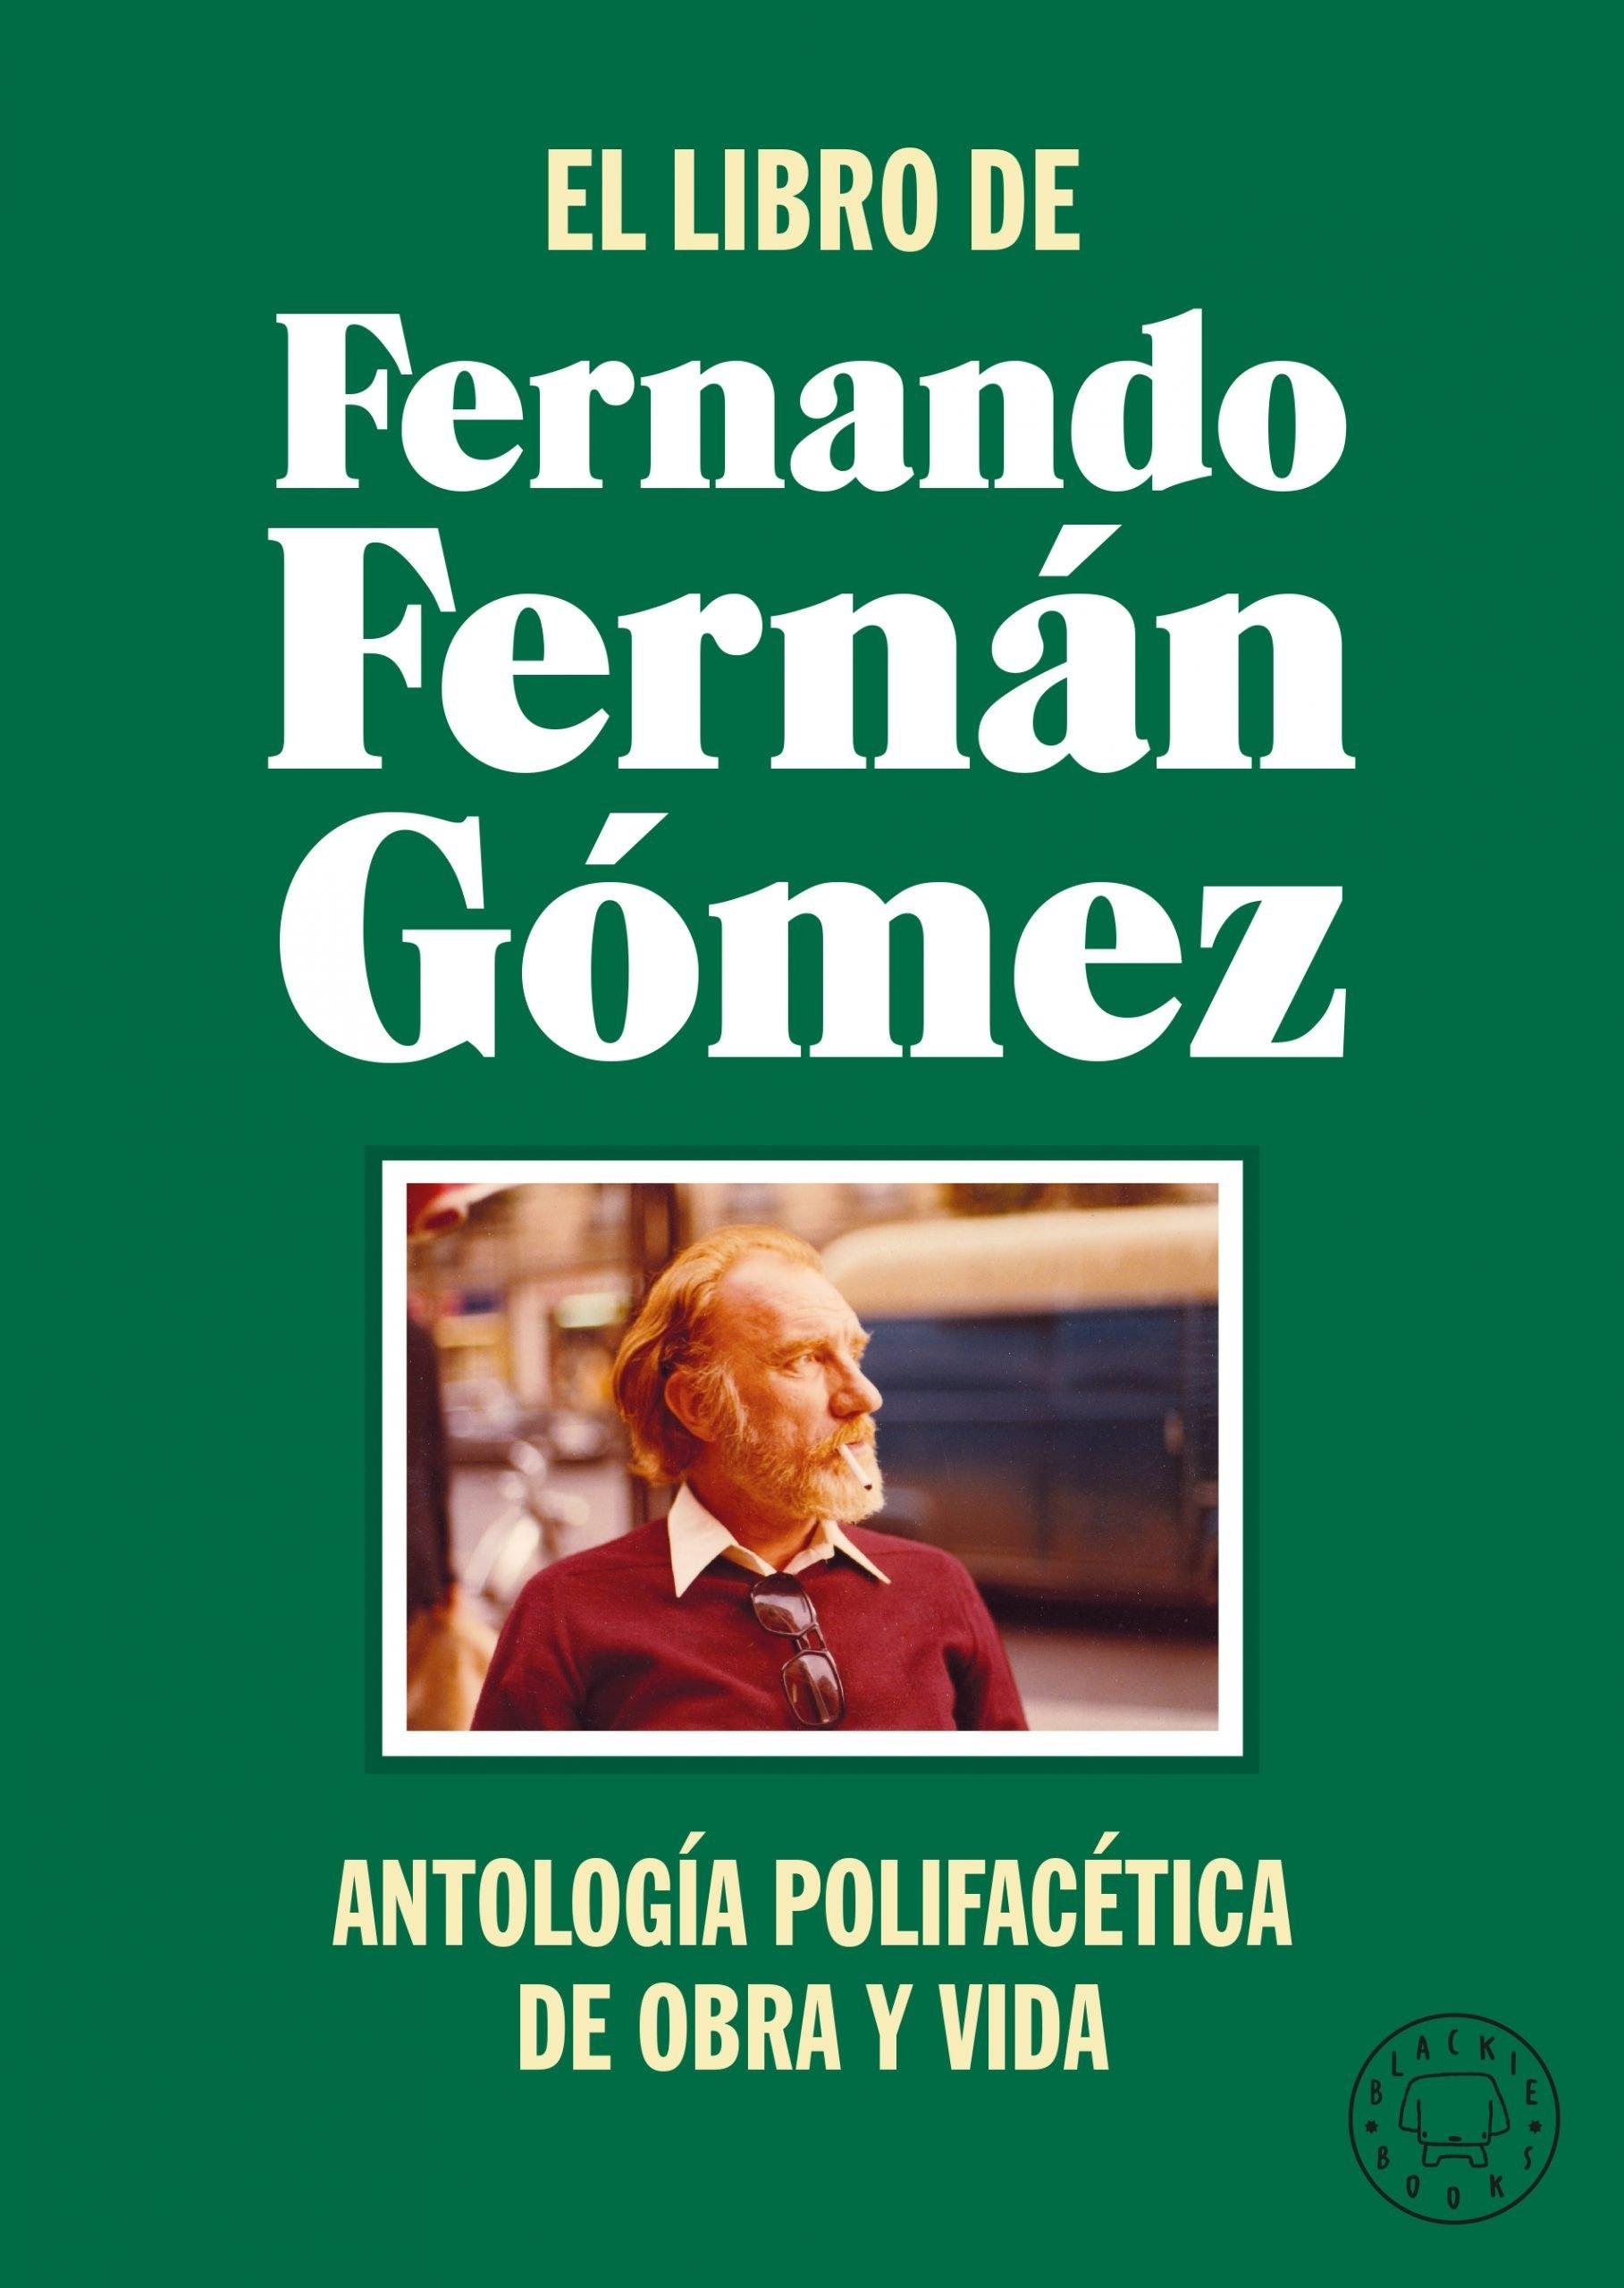 Libro de Fernando Fernán Gómez, El "Antología polifacética de obra y vida"